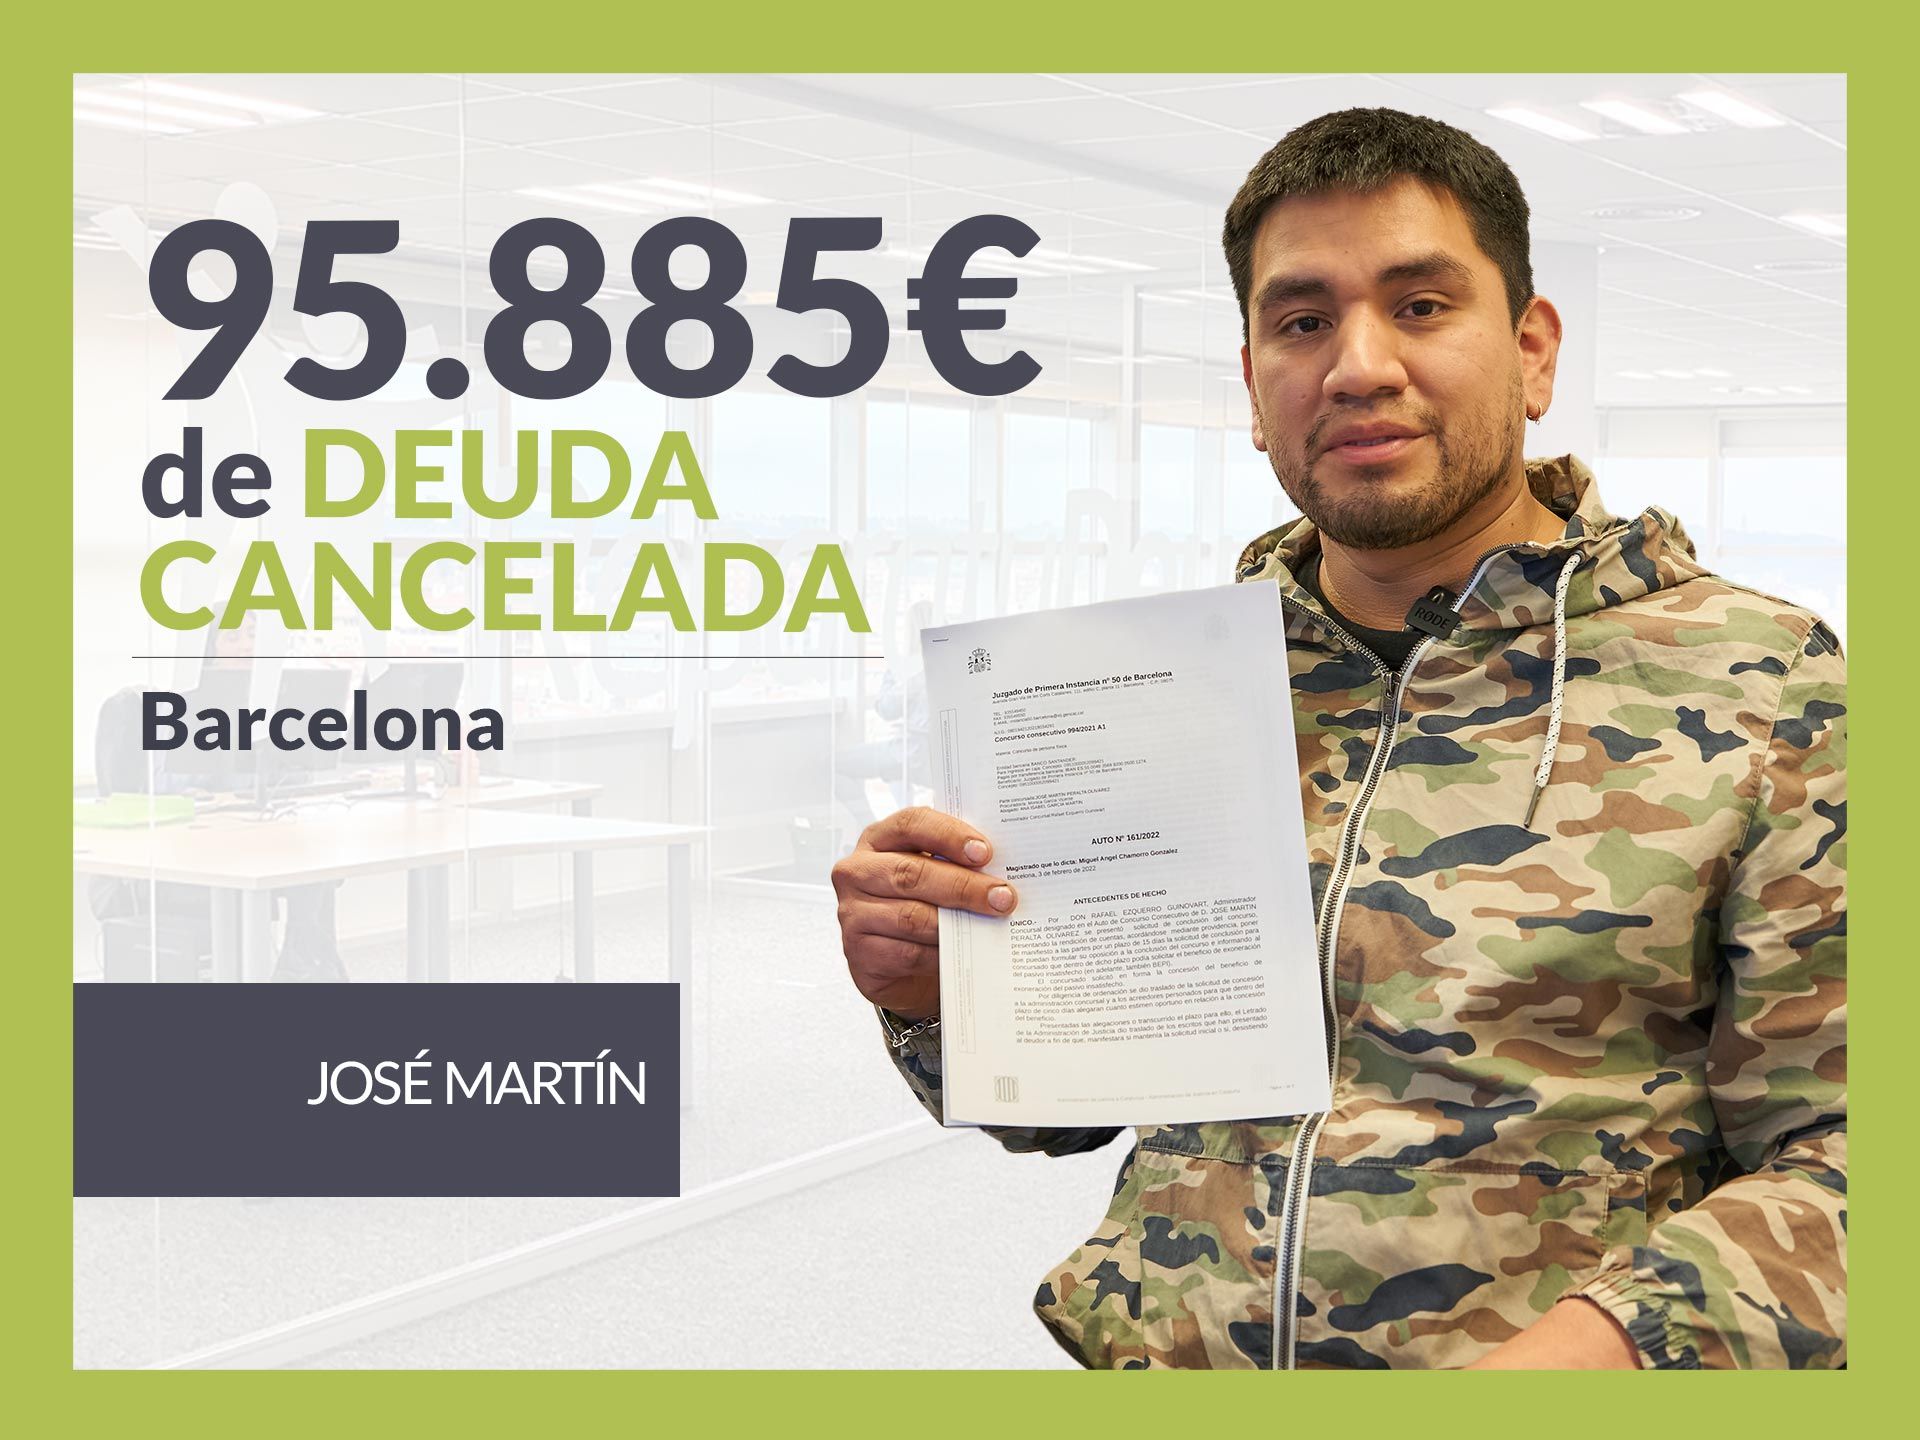 Repara tu Deuda Abogados cancela 95.885? en Barcelona (Catalunya) con la Ley de Segunda Oportunidad